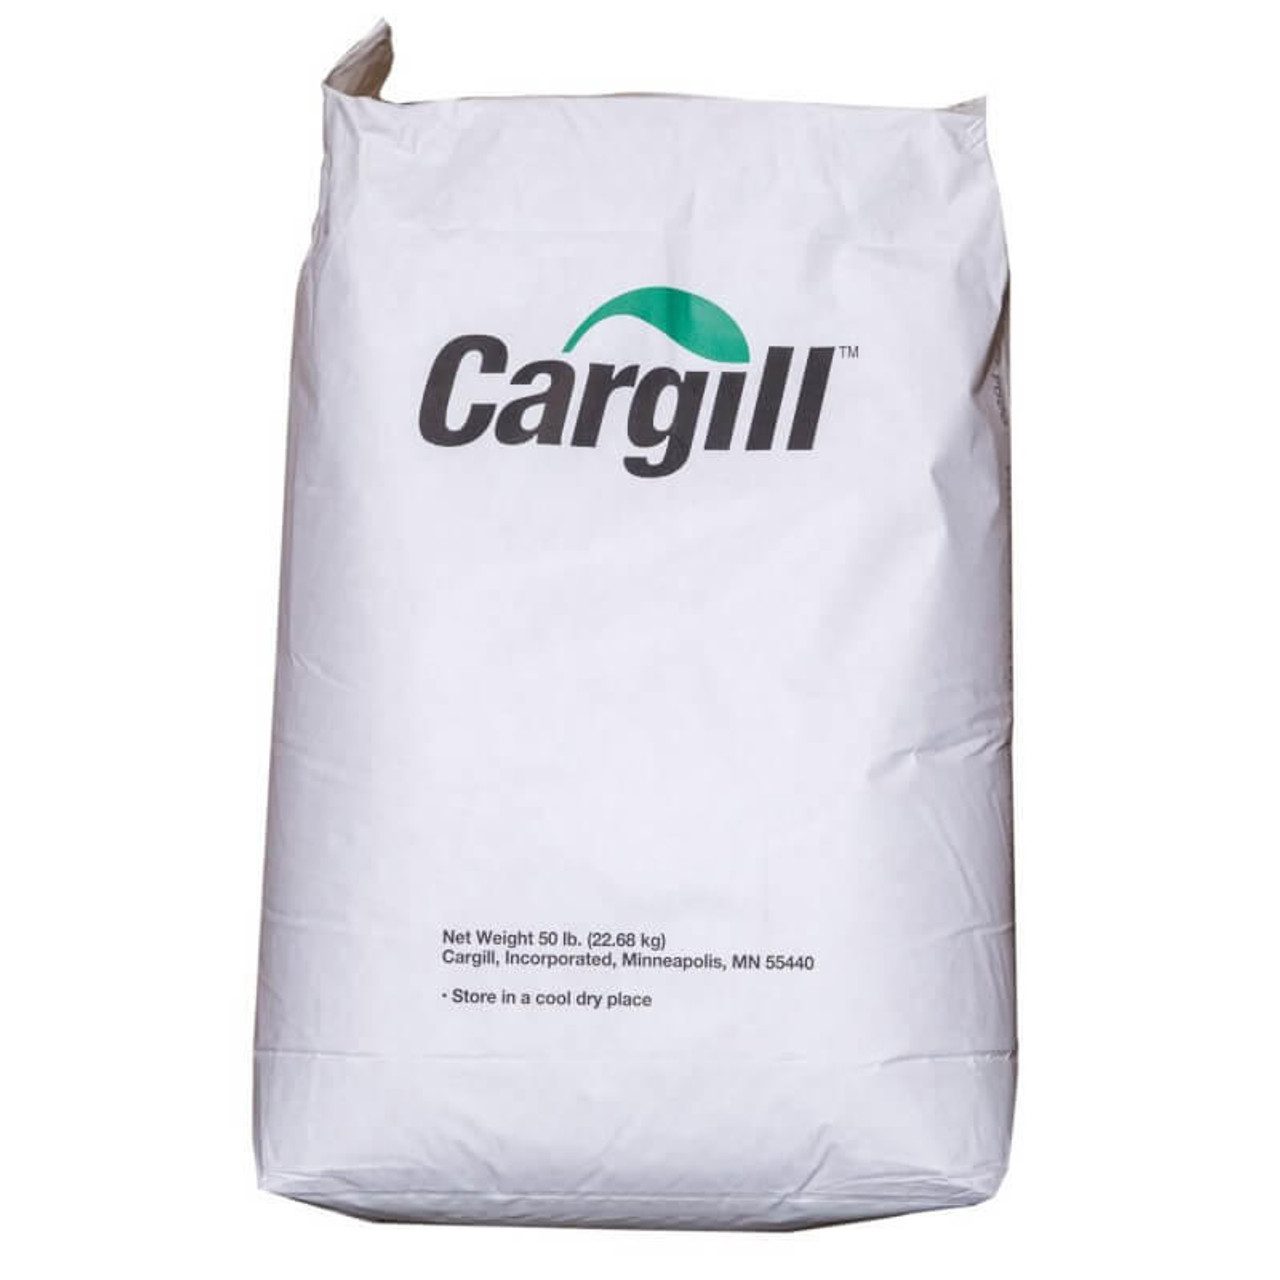  Cargill Corn Starch Bulk Food Service 22.68kg/50Lbs 